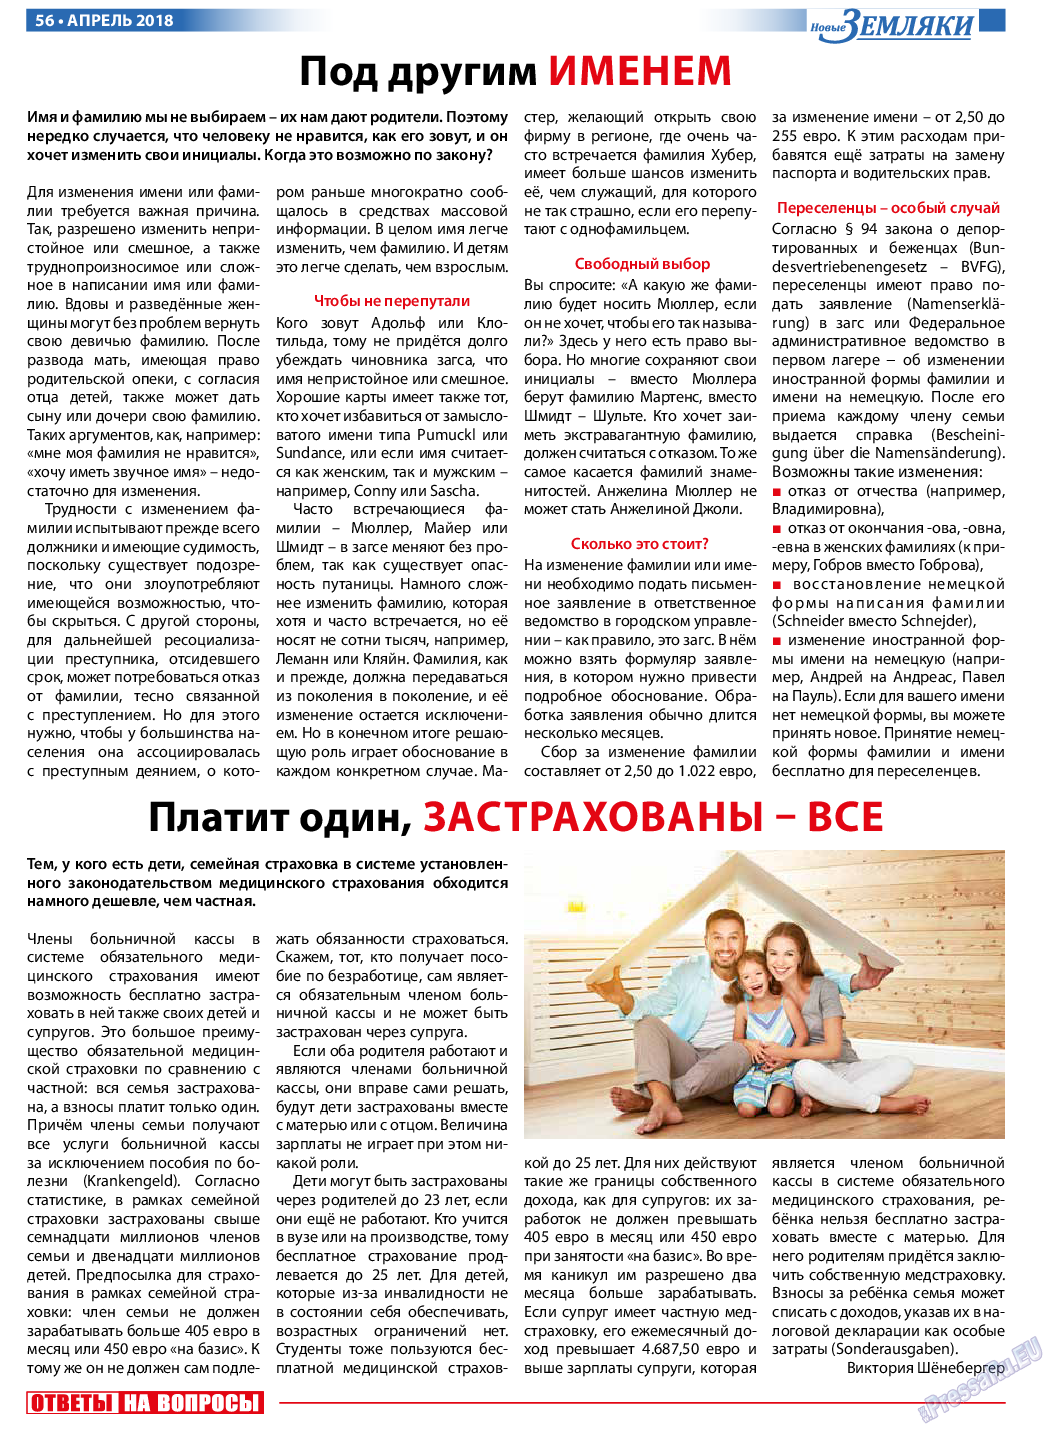 Новые Земляки, газета. 2018 №4 стр.56